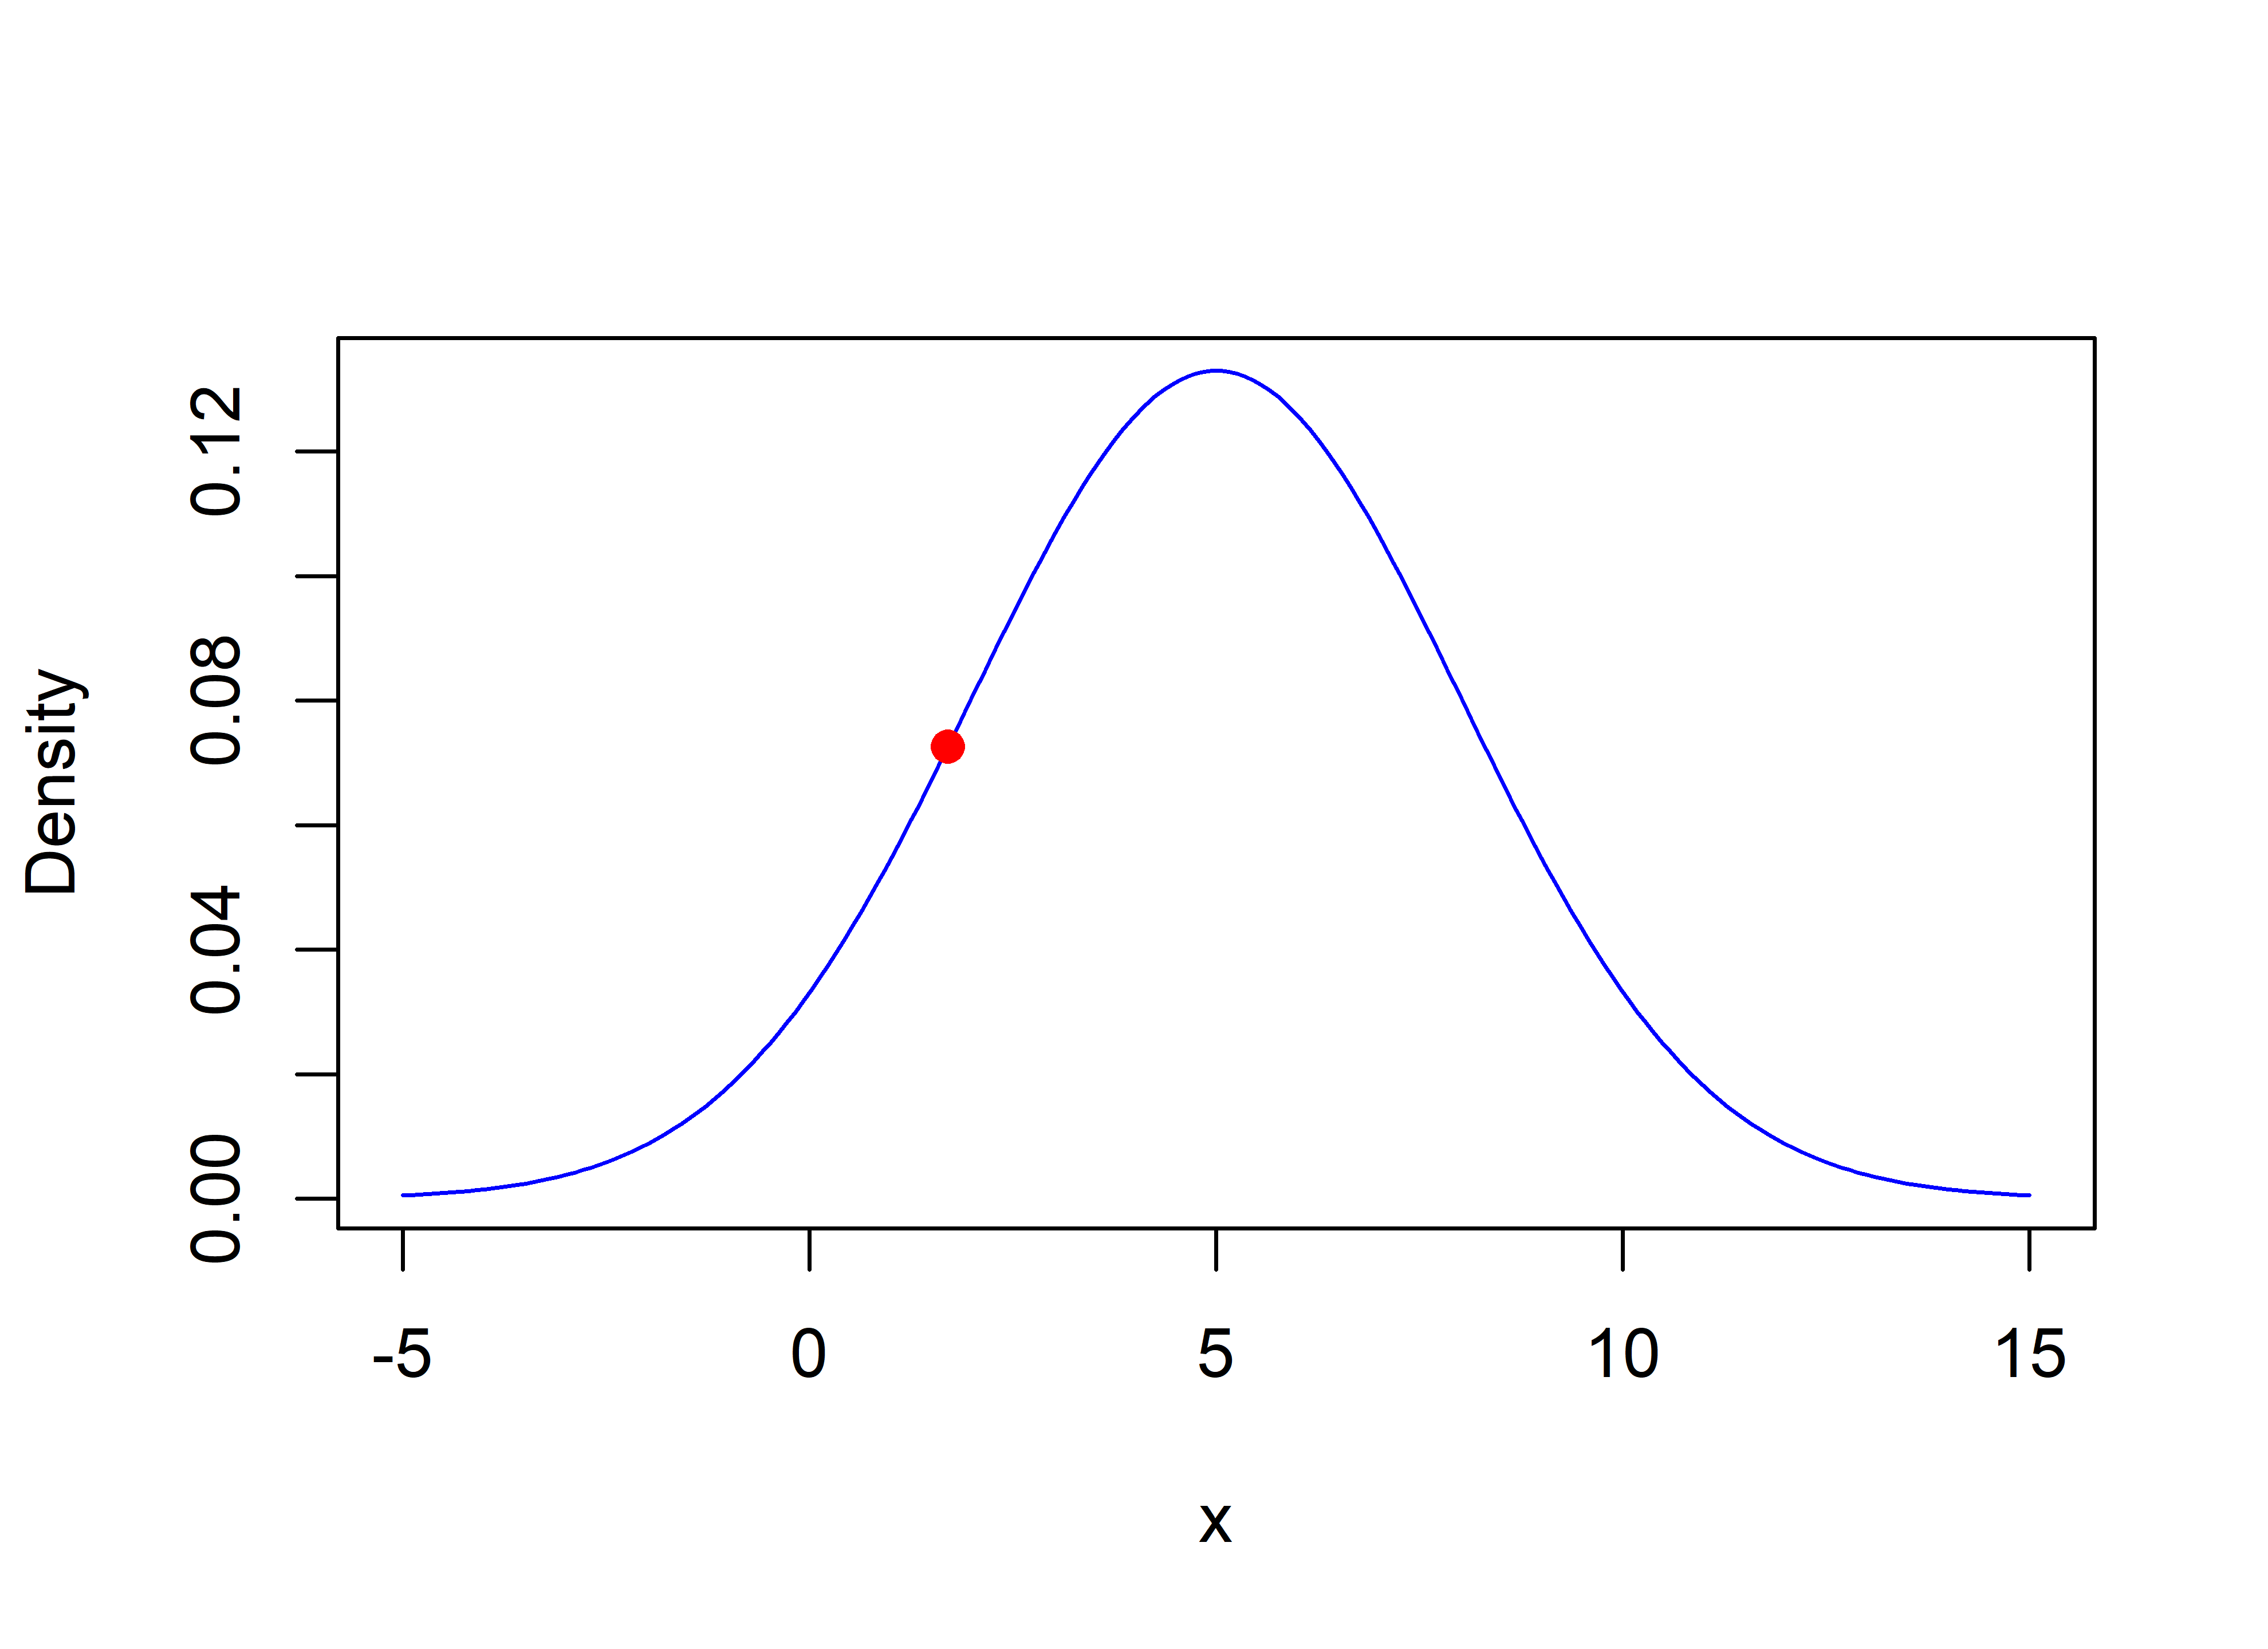 Likelihood (0.072) when x=1.7.